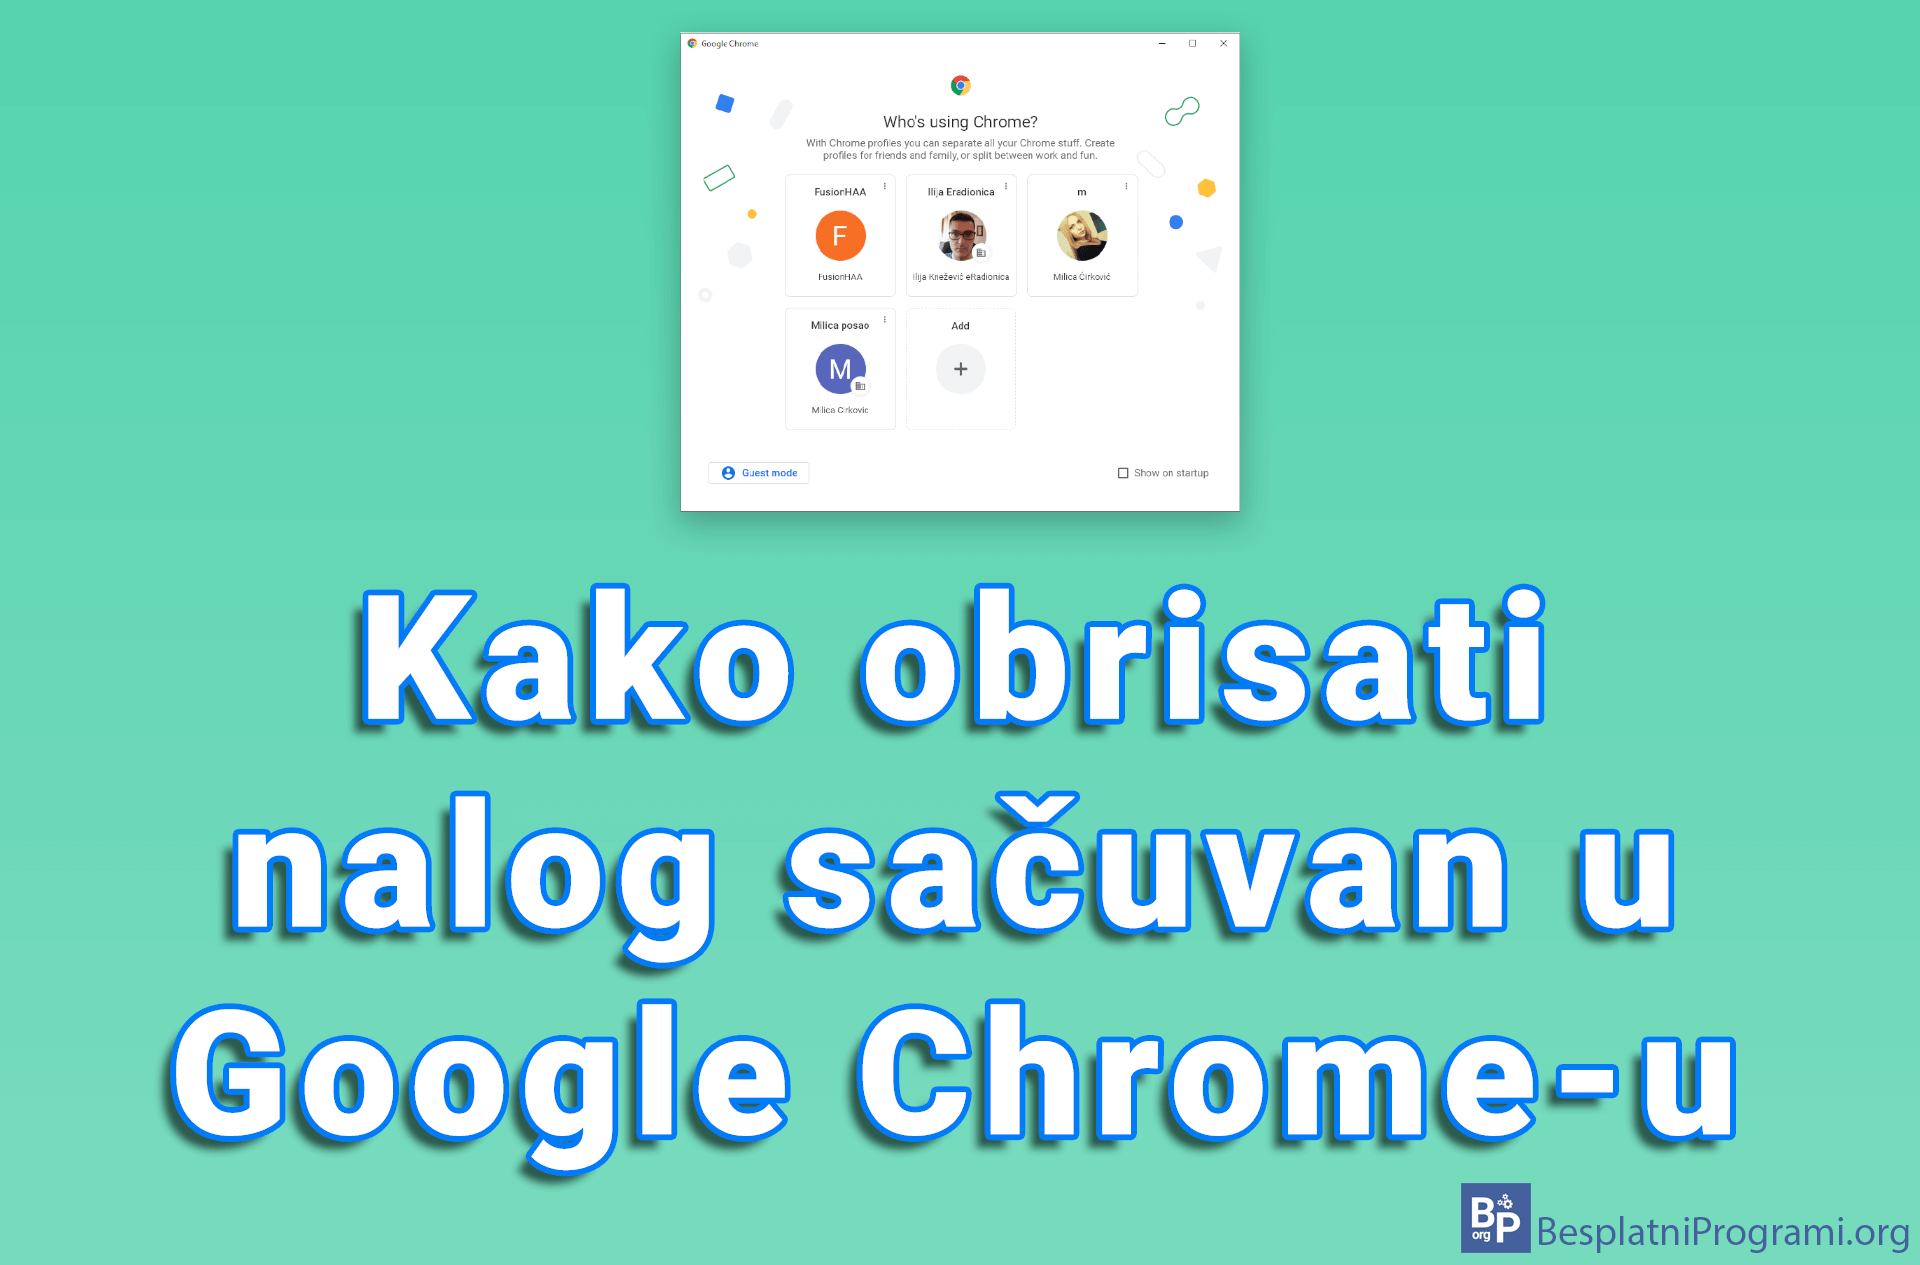 Kako obrisati nalog sačuvan u Google Chrome-u